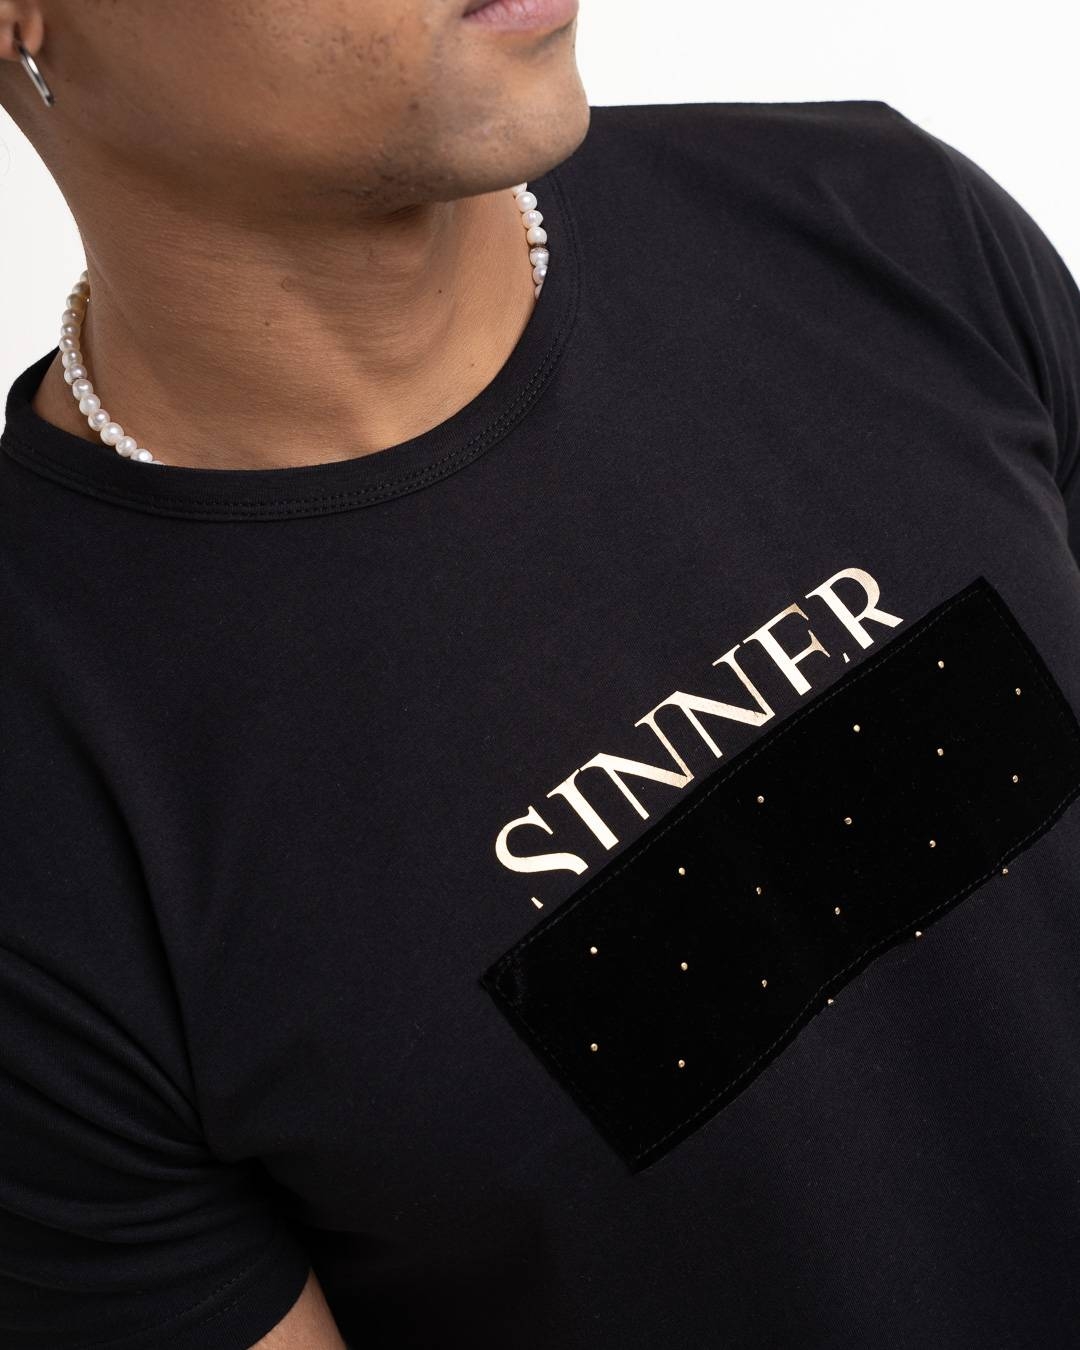 MRT Martini 'Sinner' T-shirt - Black